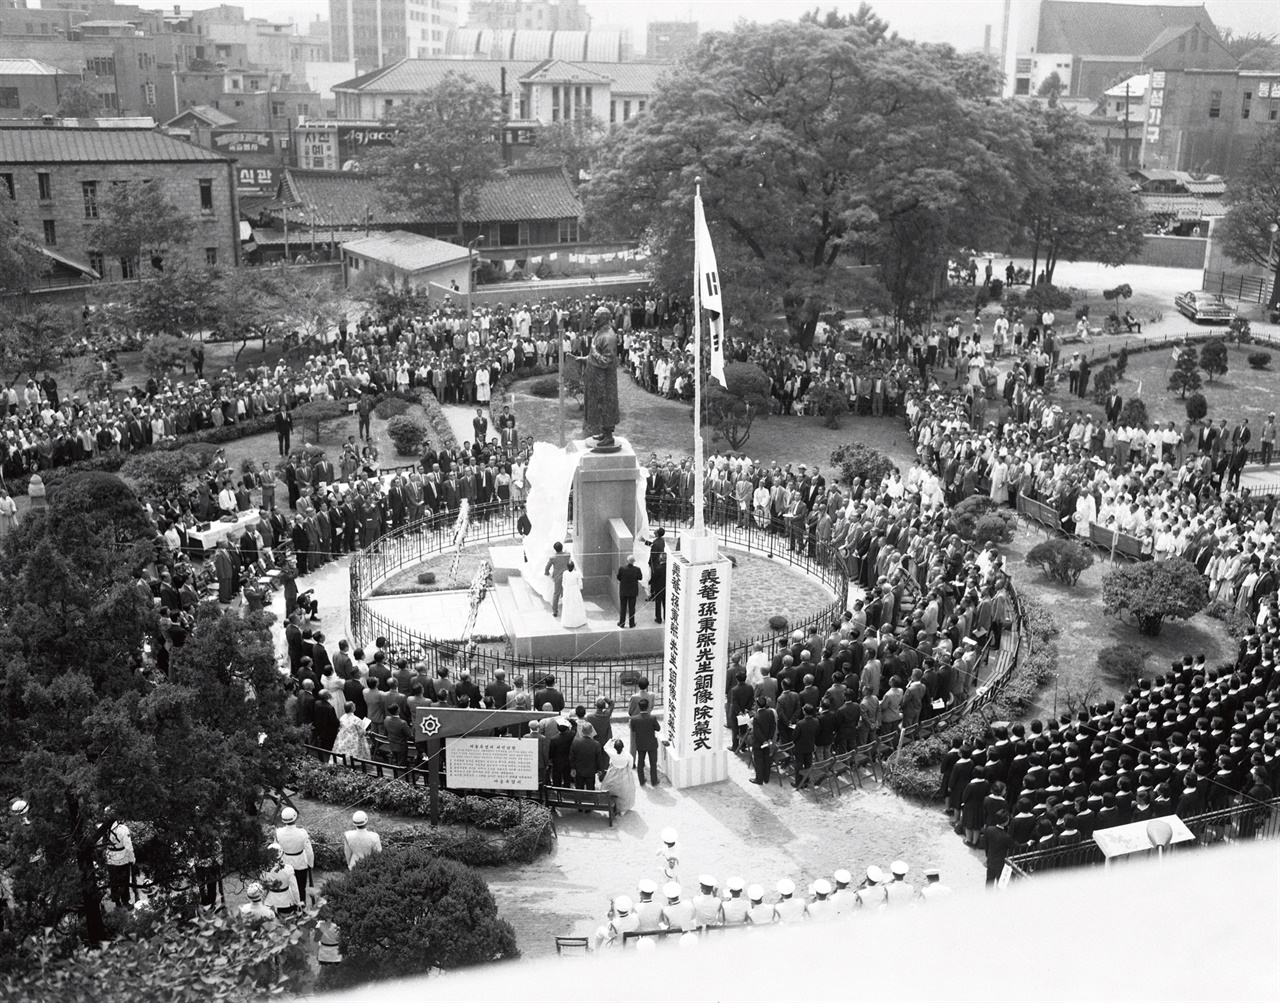 탑골공원에 3.1운동 정신을 기려, 1966년 손병희 동상을 제막하는 광경.